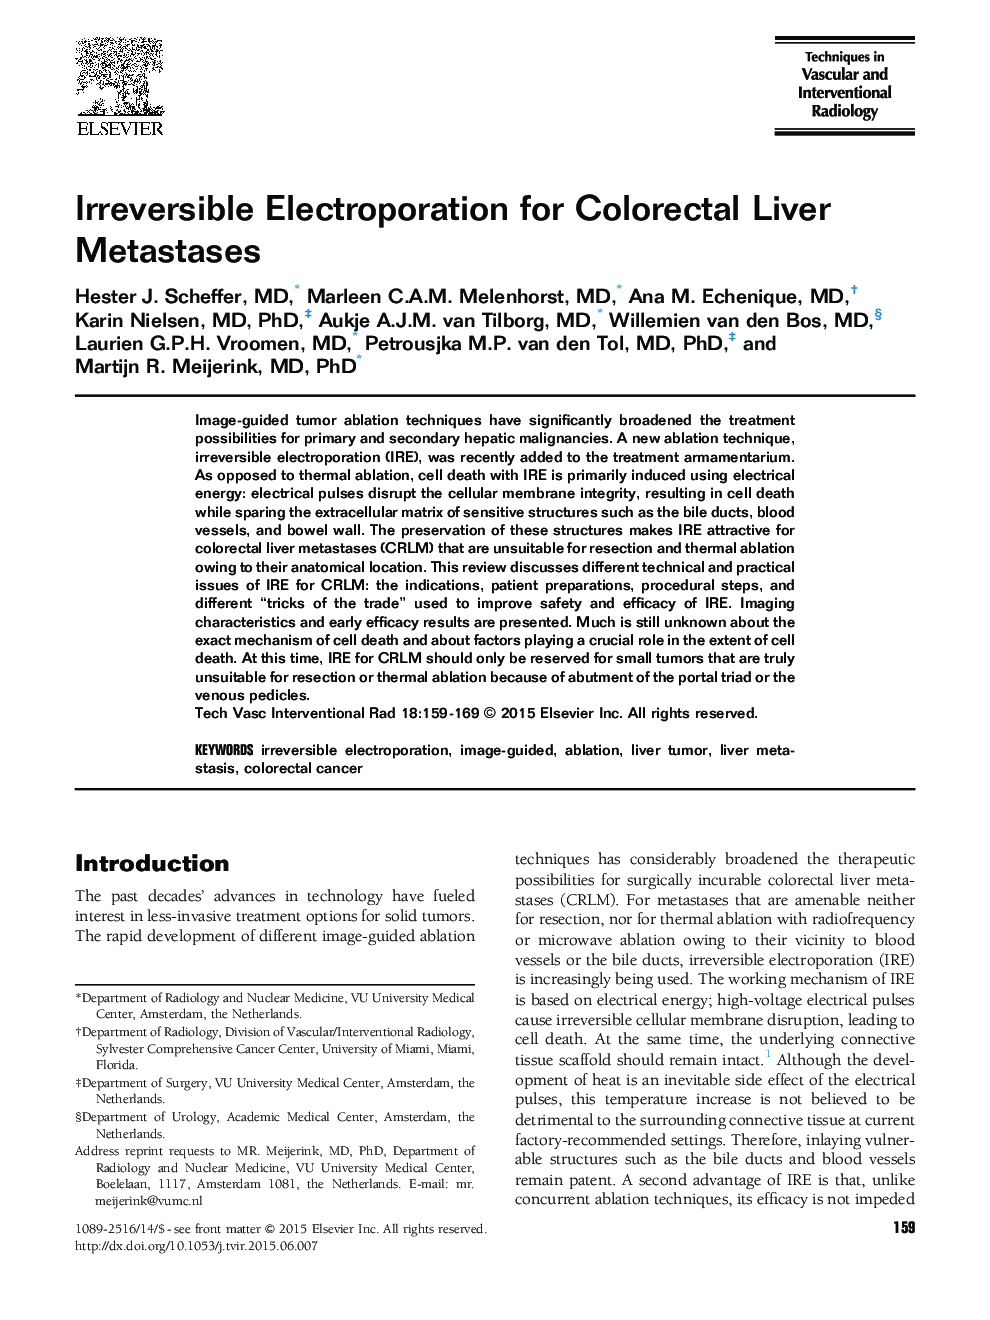 Irreversible Electroporation for Colorectal Liver Metastases